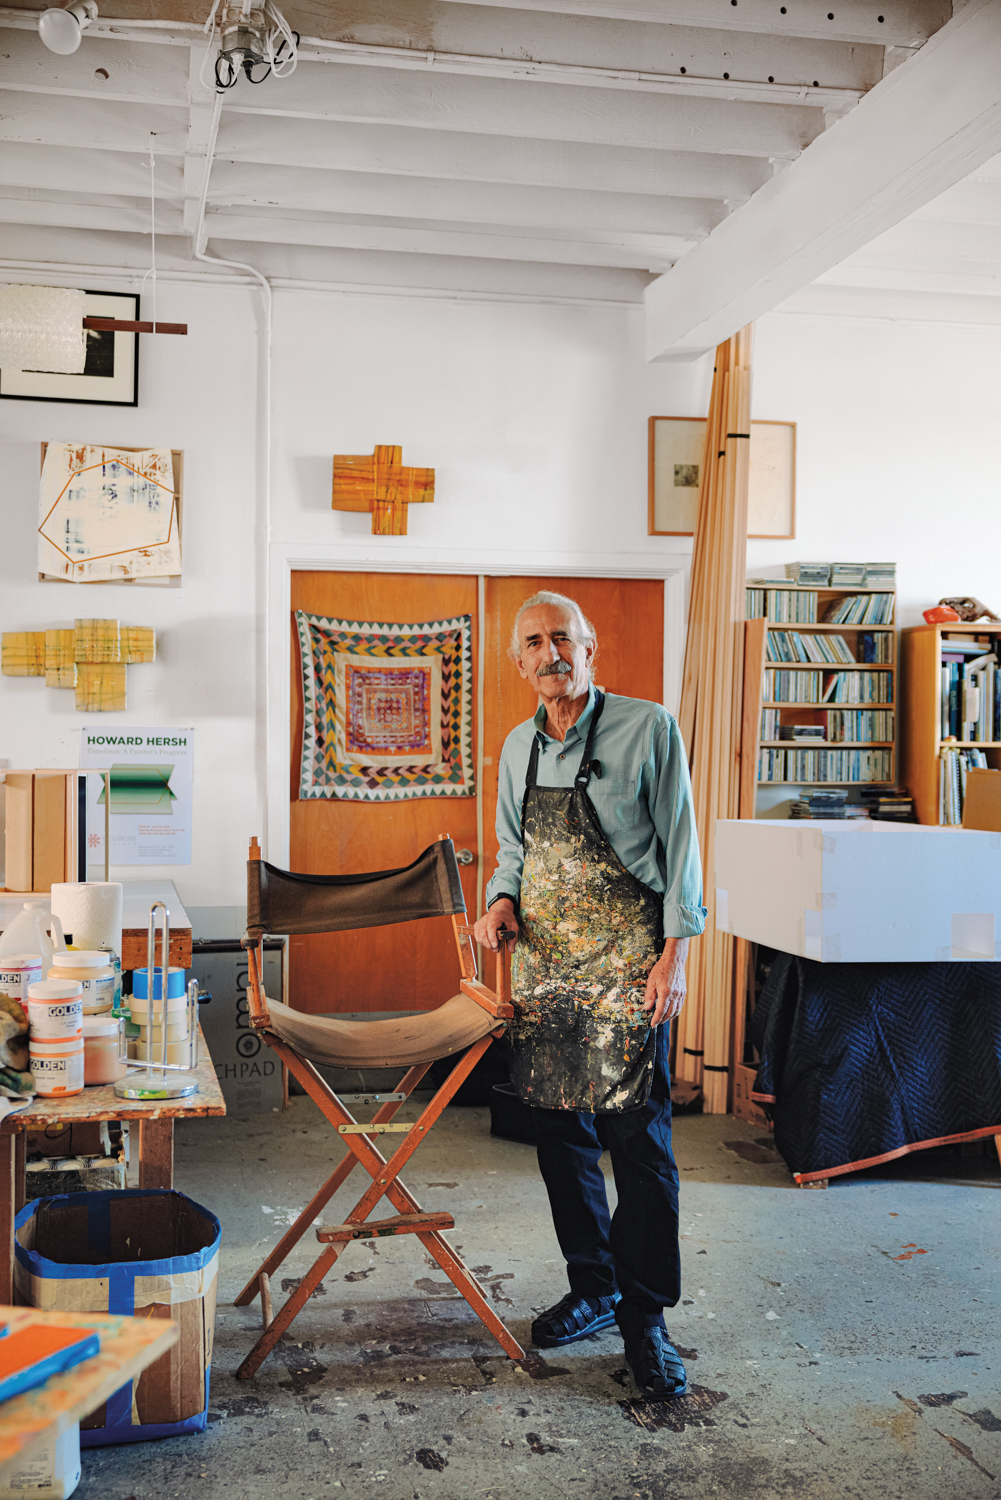 Howard Hersh in his studio